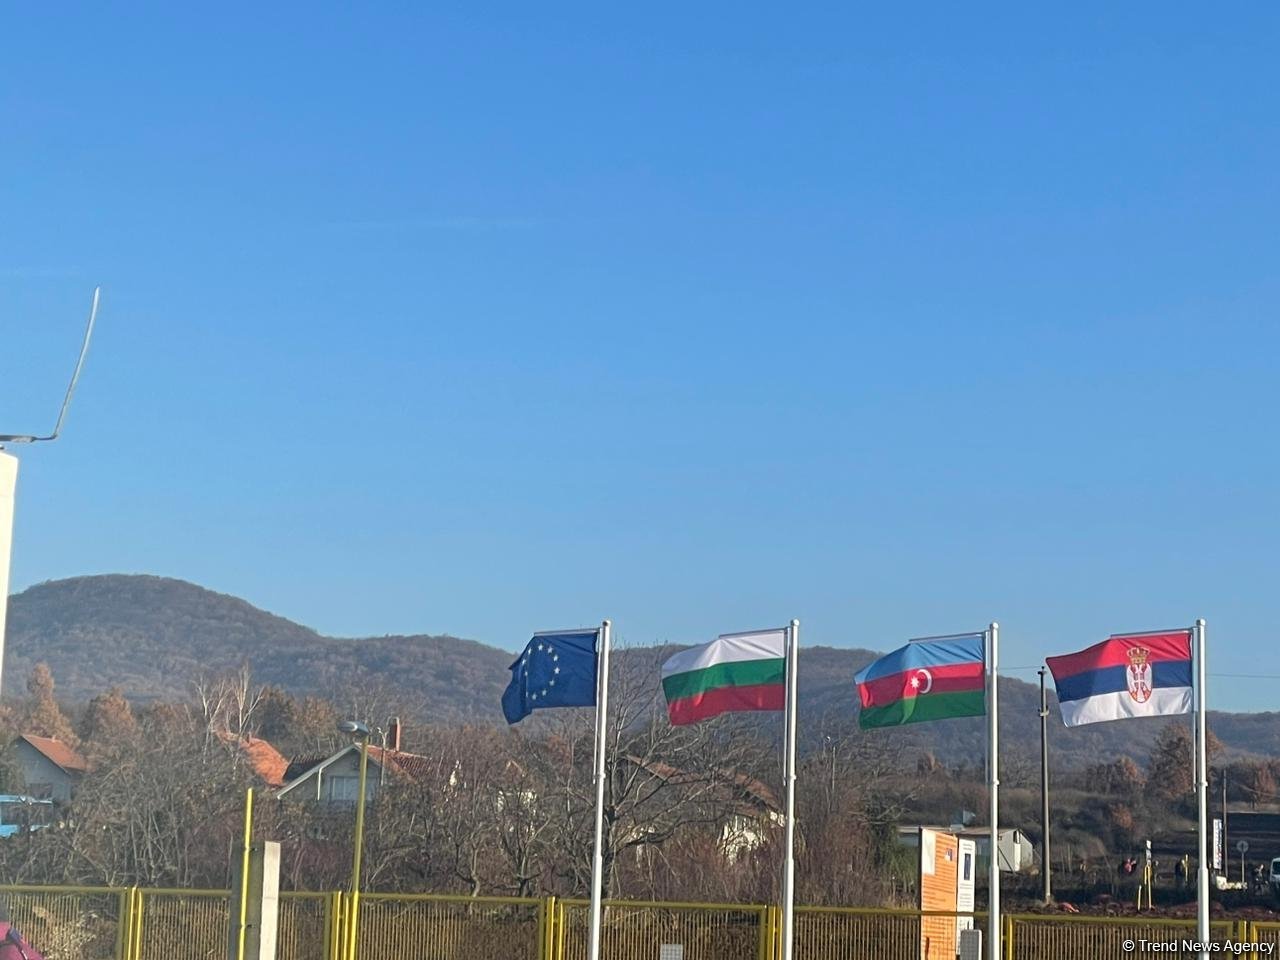 Состоялась церемония запуска интерконнектора Сербия – Болгария (ФОТОРЕПОРТАЖ)